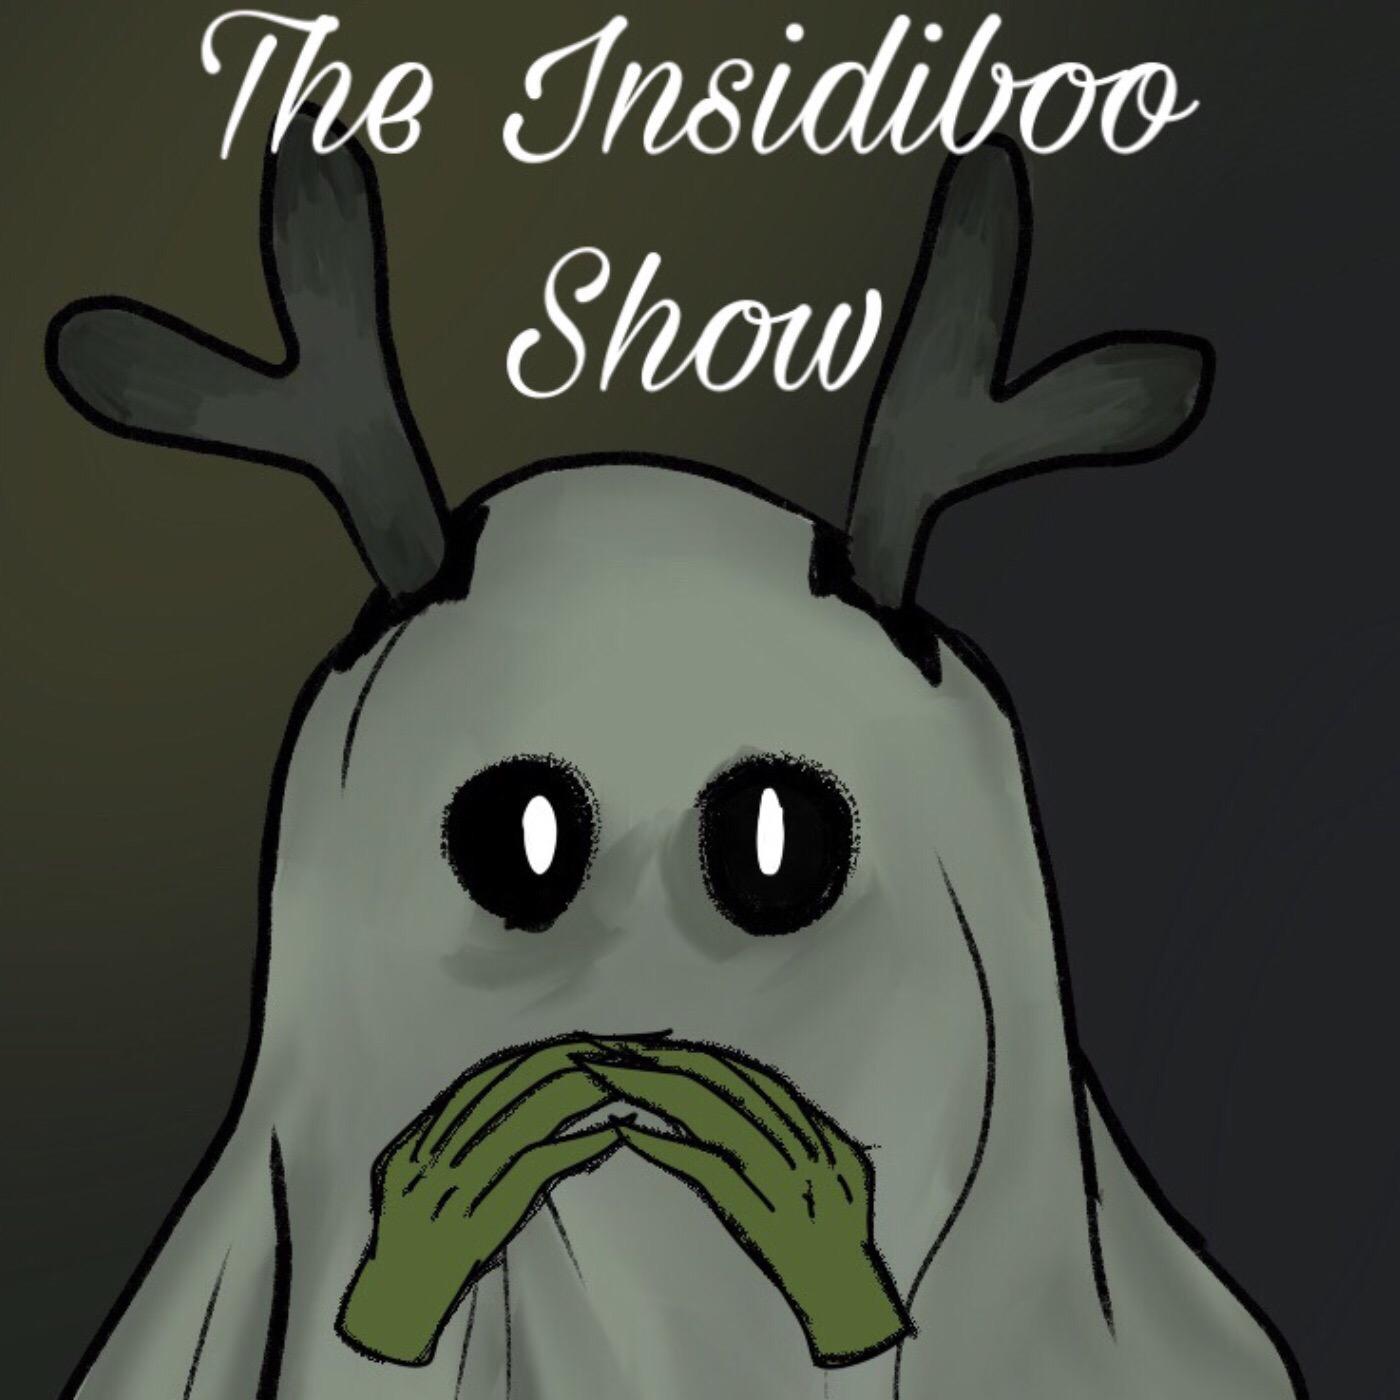 The Insidiboo Show